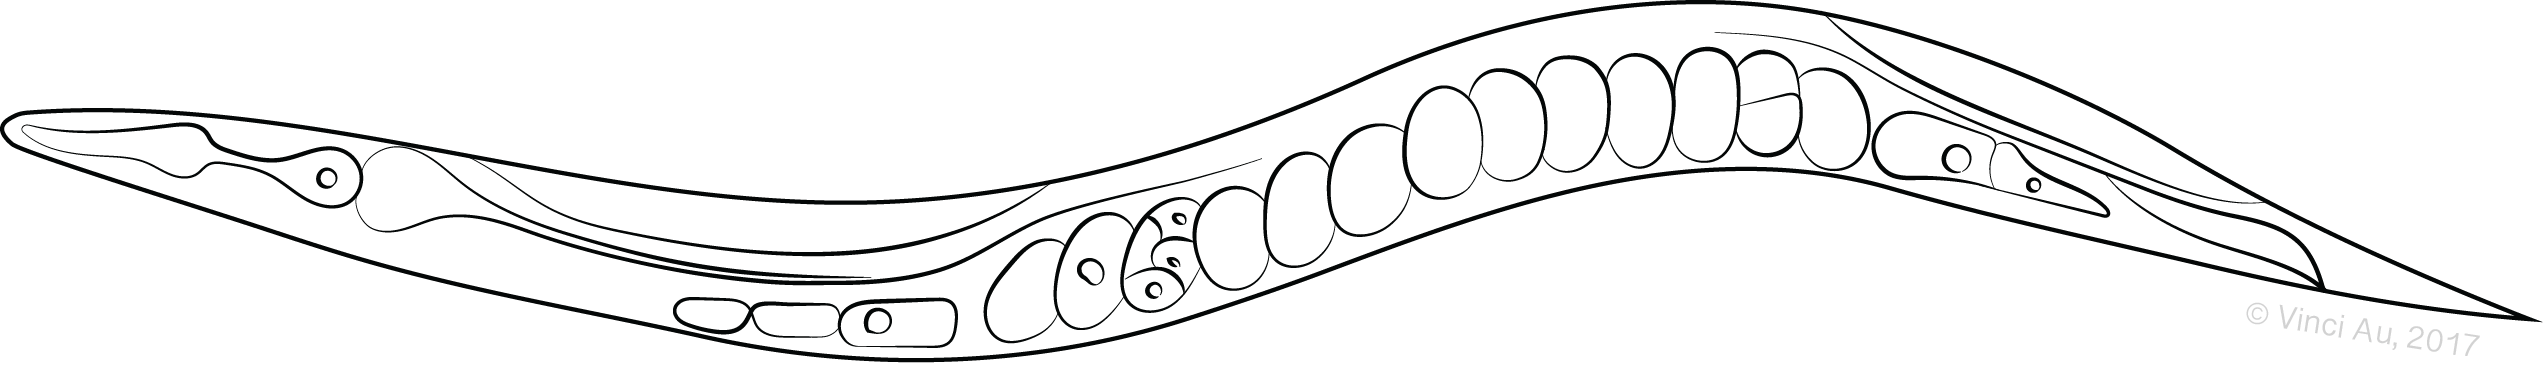 Outline of C. elegans